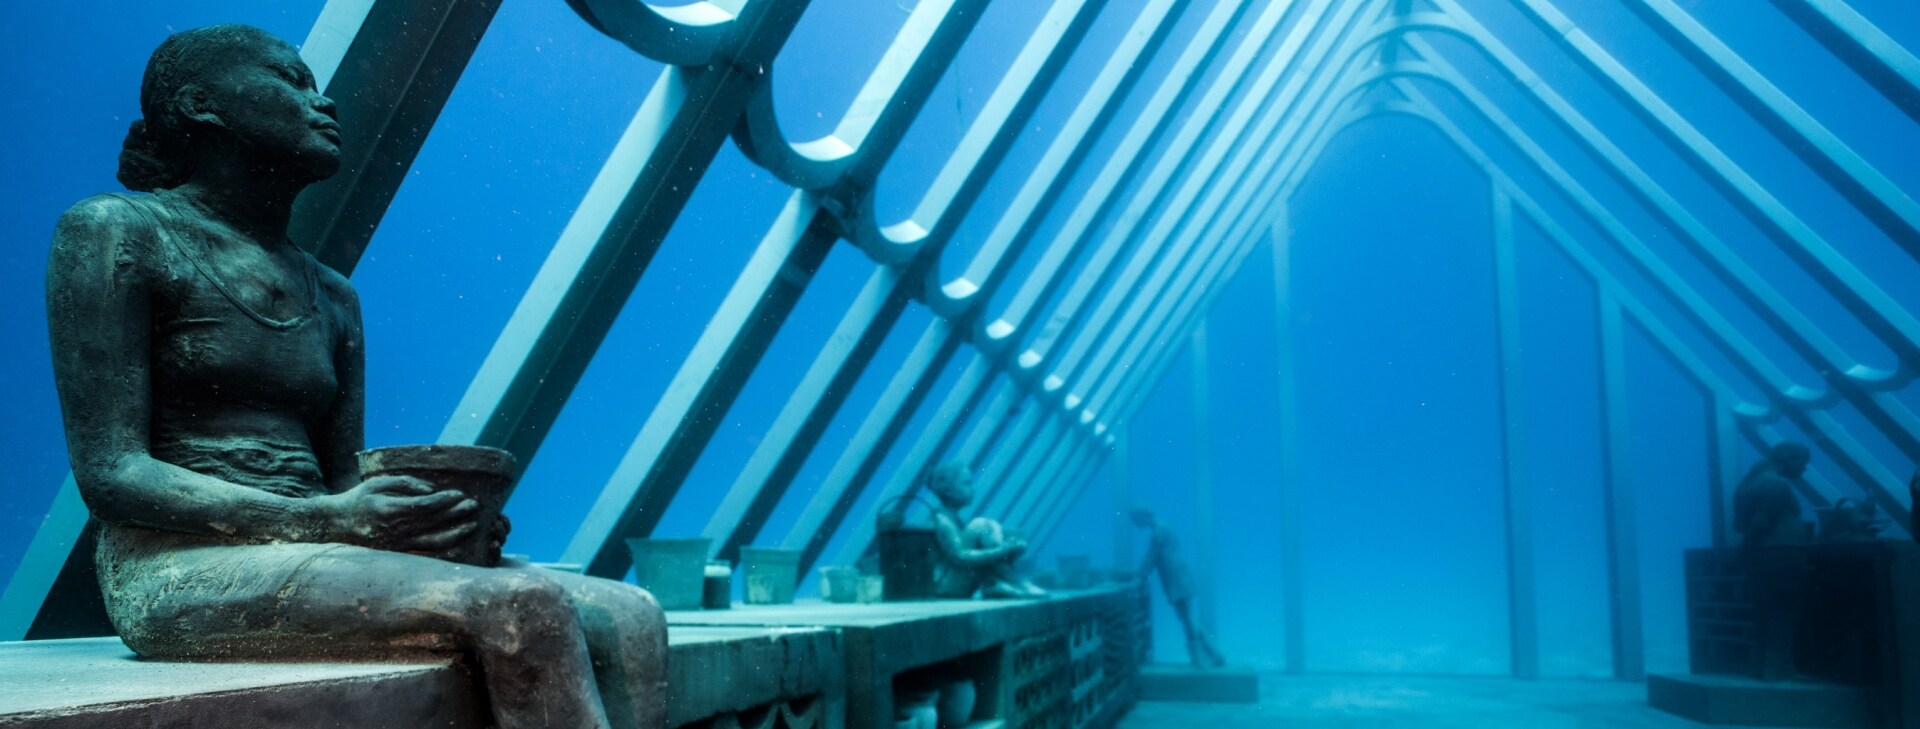 湯斯維爾附近的海底藝術博物館內的水底雕塑展覽©Matt Curnock